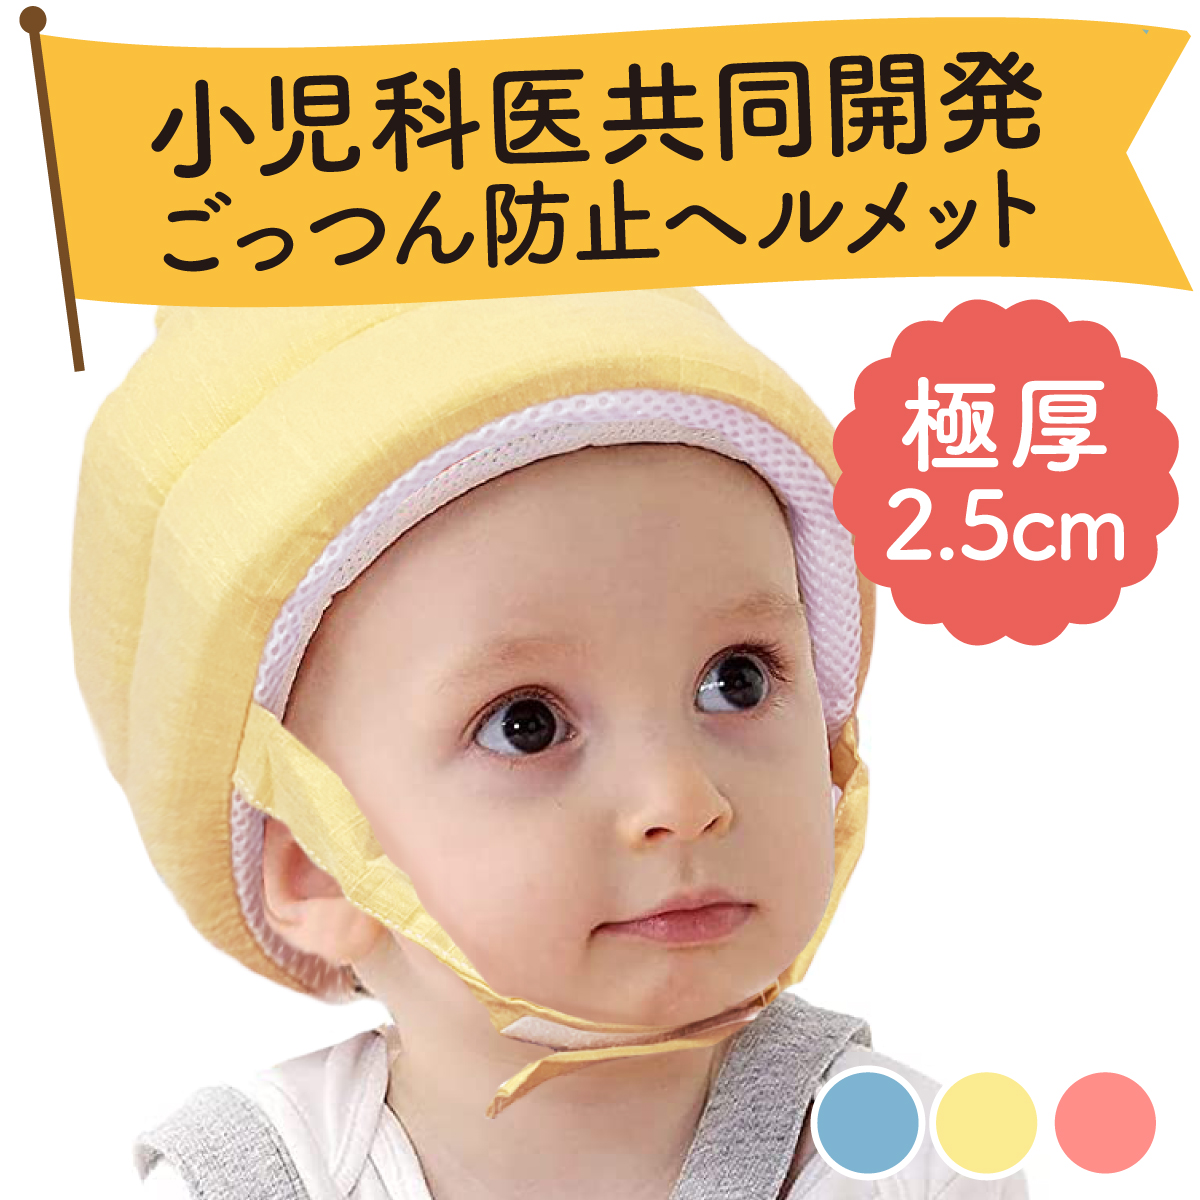 小児科医共同開発 ベビーヘルメット 赤ちゃん ヘッドガード ごっつん